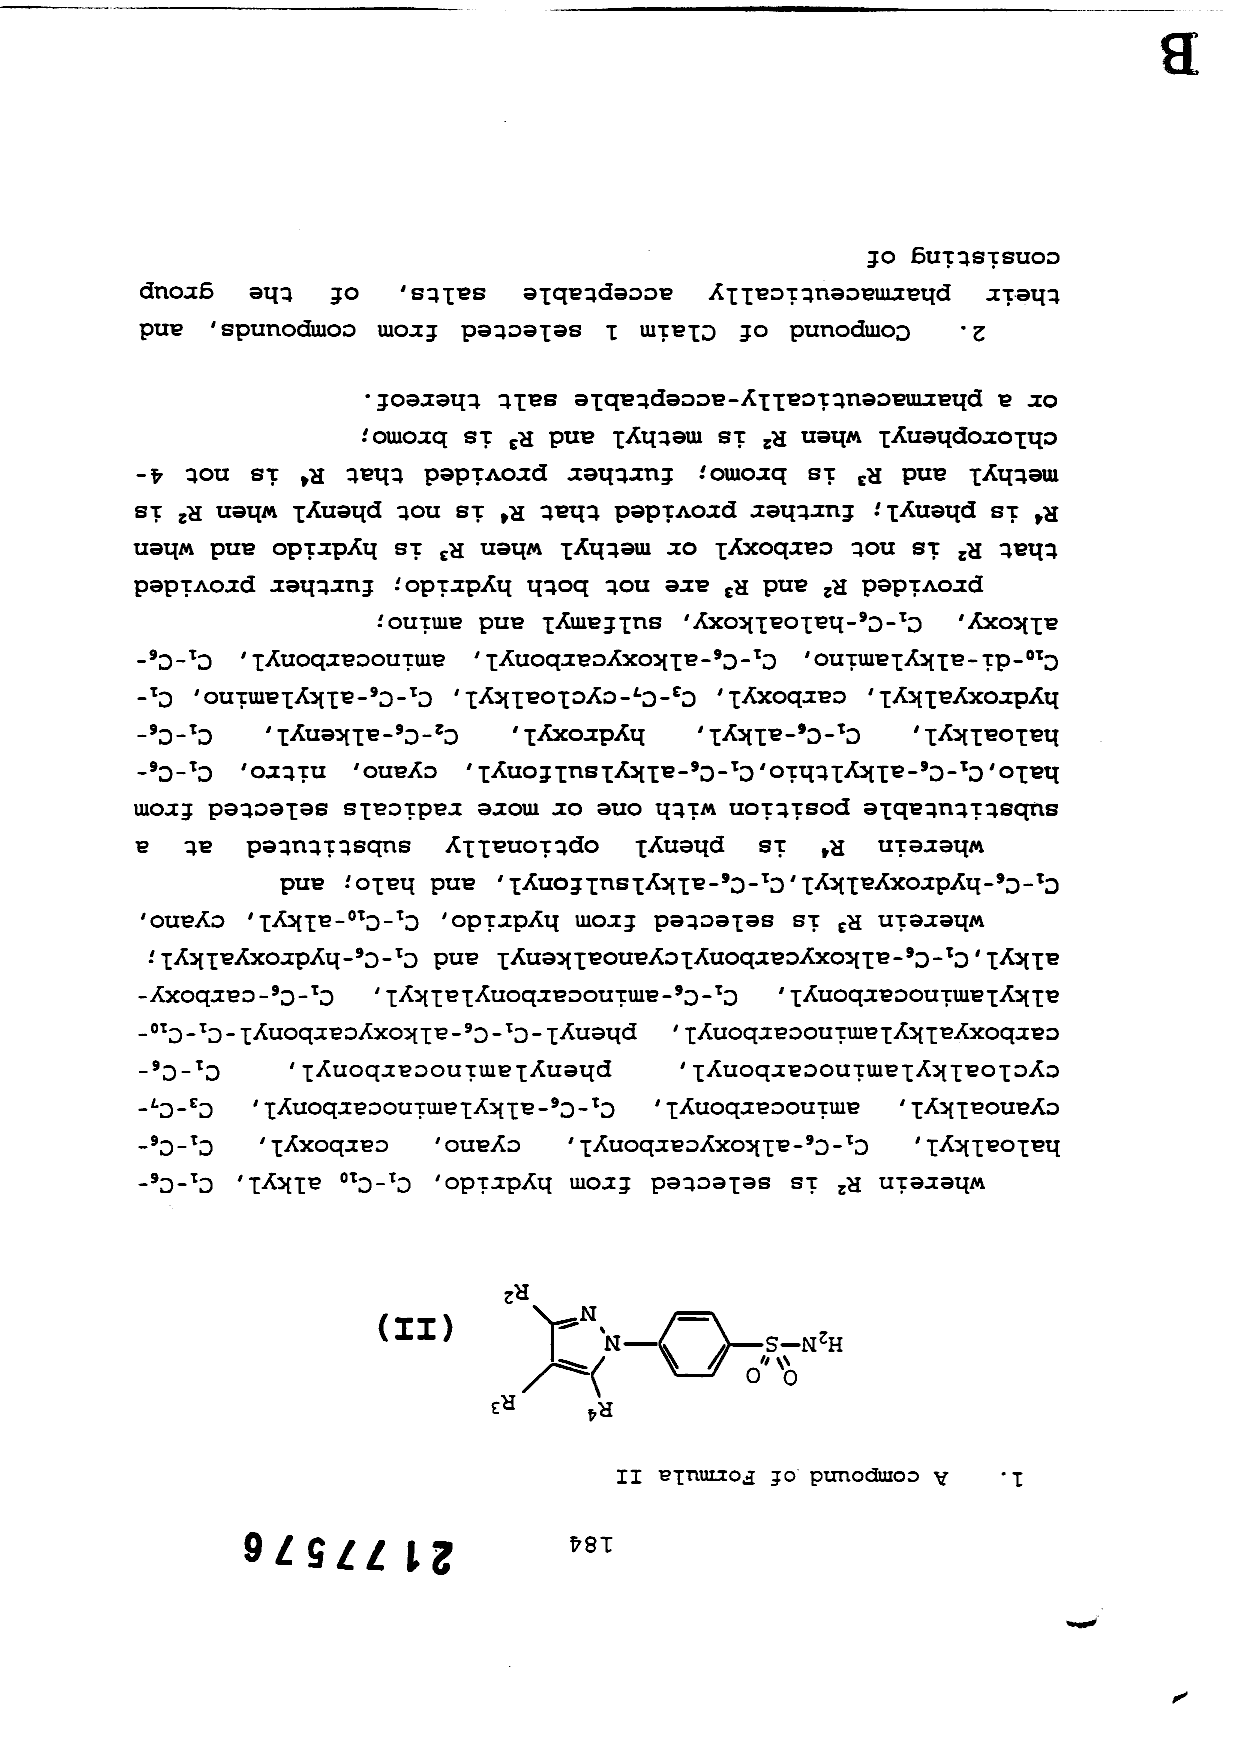 Document de brevet canadien 2177576. Revendications 19981216. Image 1 de 11